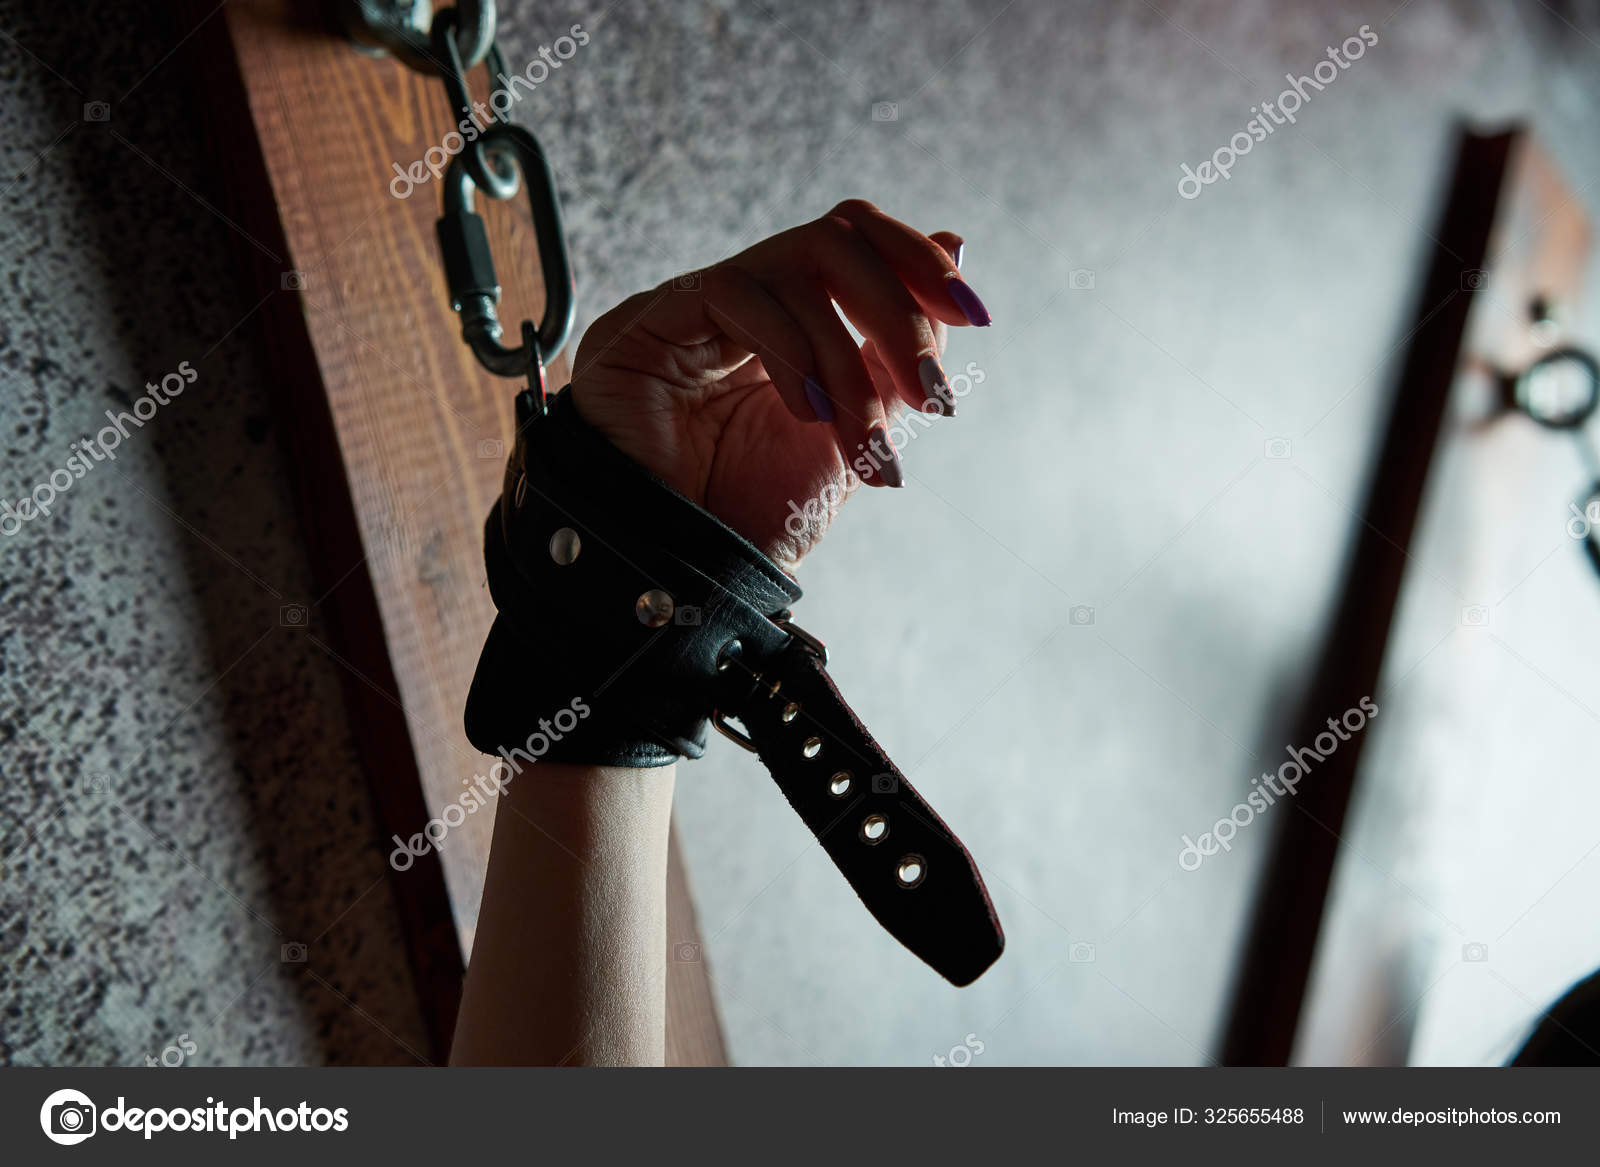 Связанная рабыня. Сексуальная женщина в наручниках. Игры для взрослых в номере BDSM . стоковое фото ©arribalko 325655488